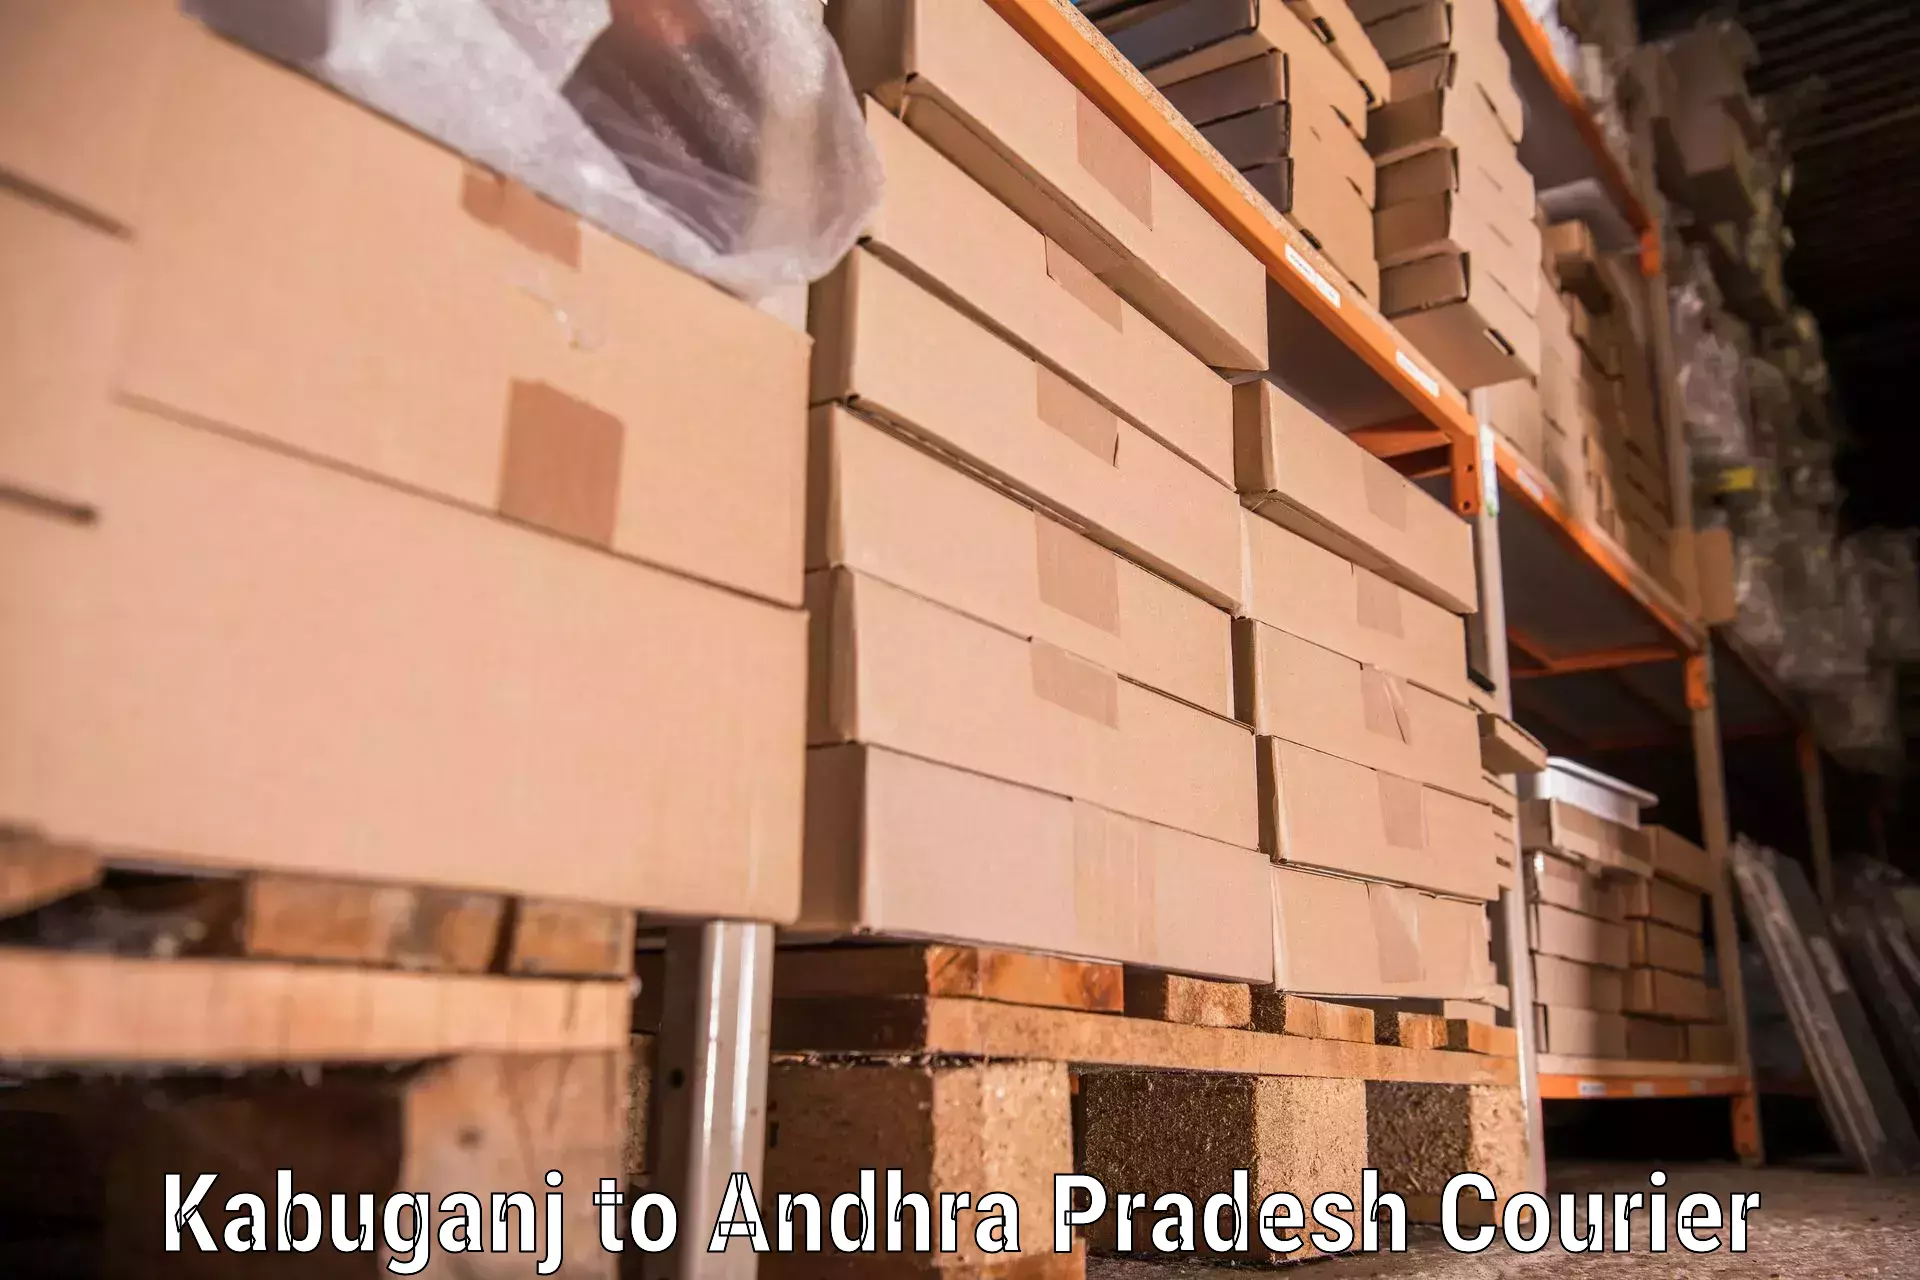 Moving and storage services Kabuganj to Sydapuram